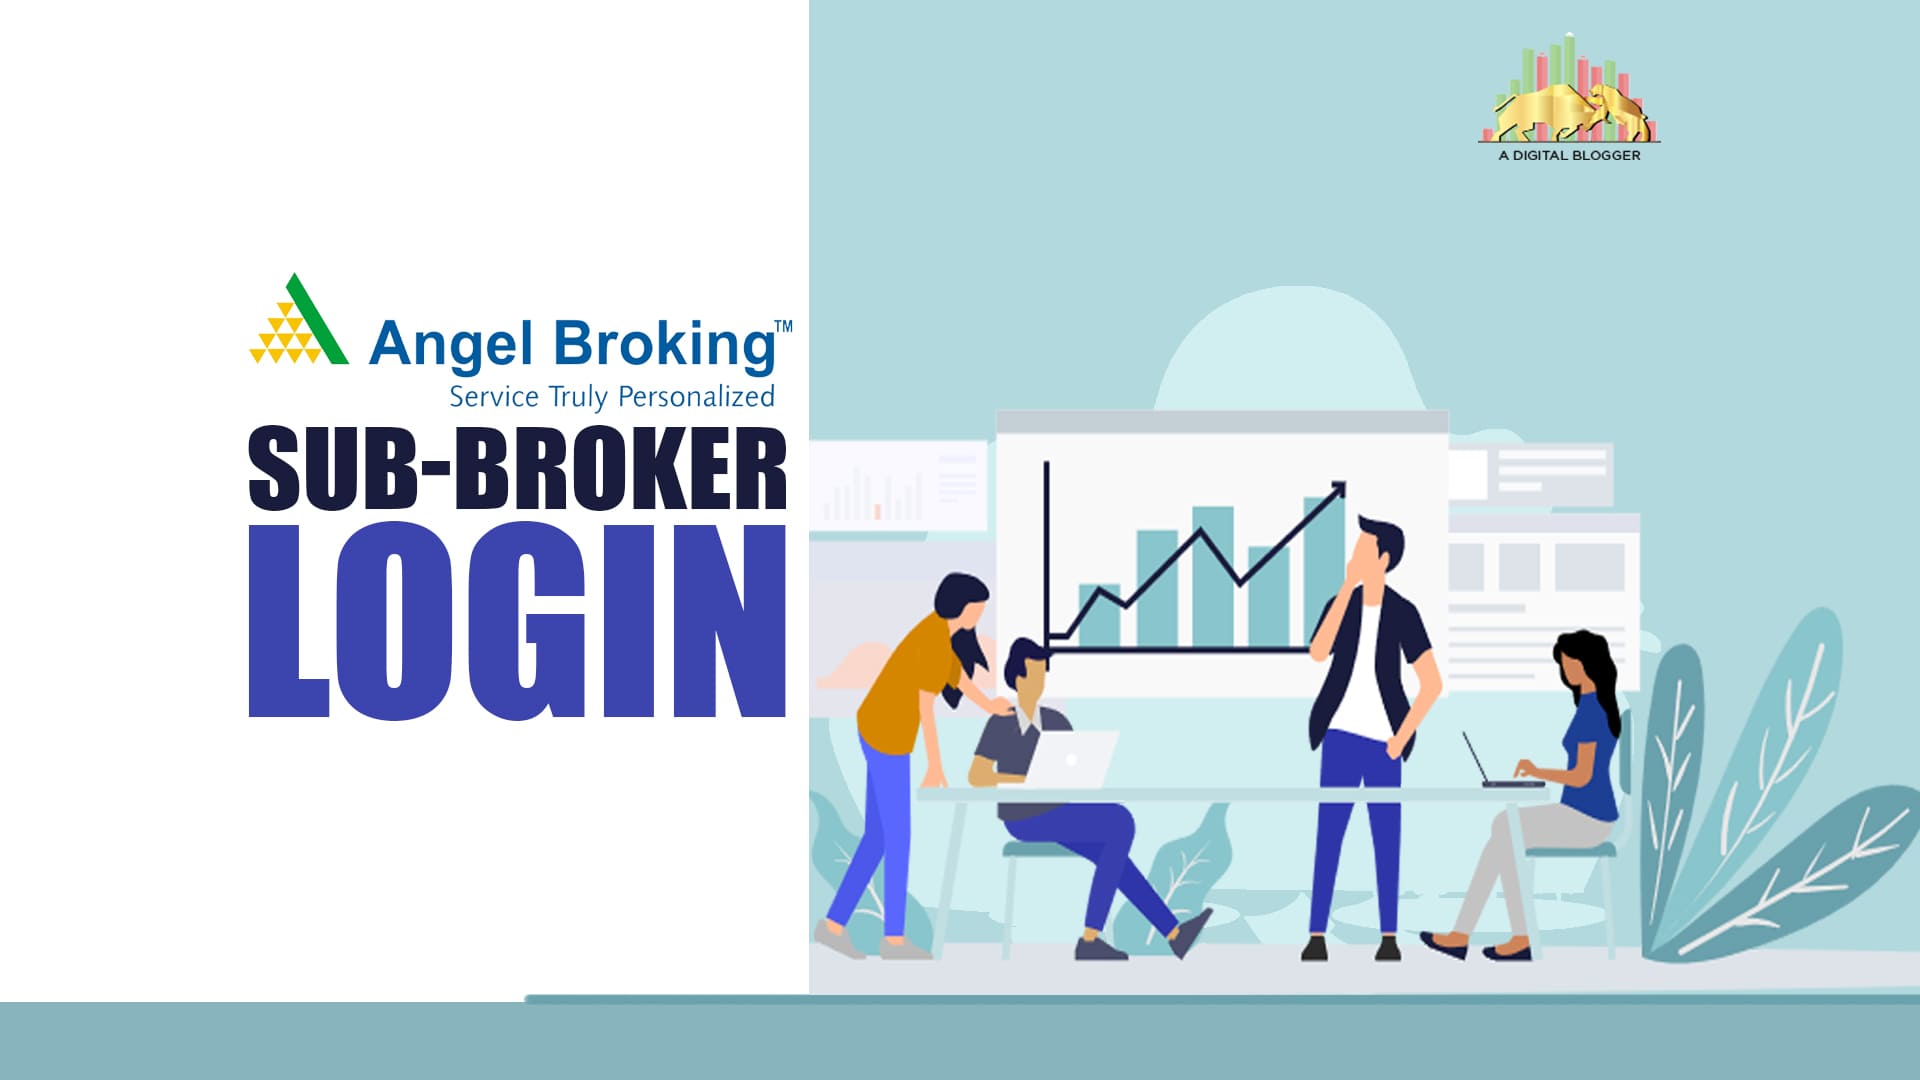 Angel Broking Sub Broker Login | Details, Web, Mobile